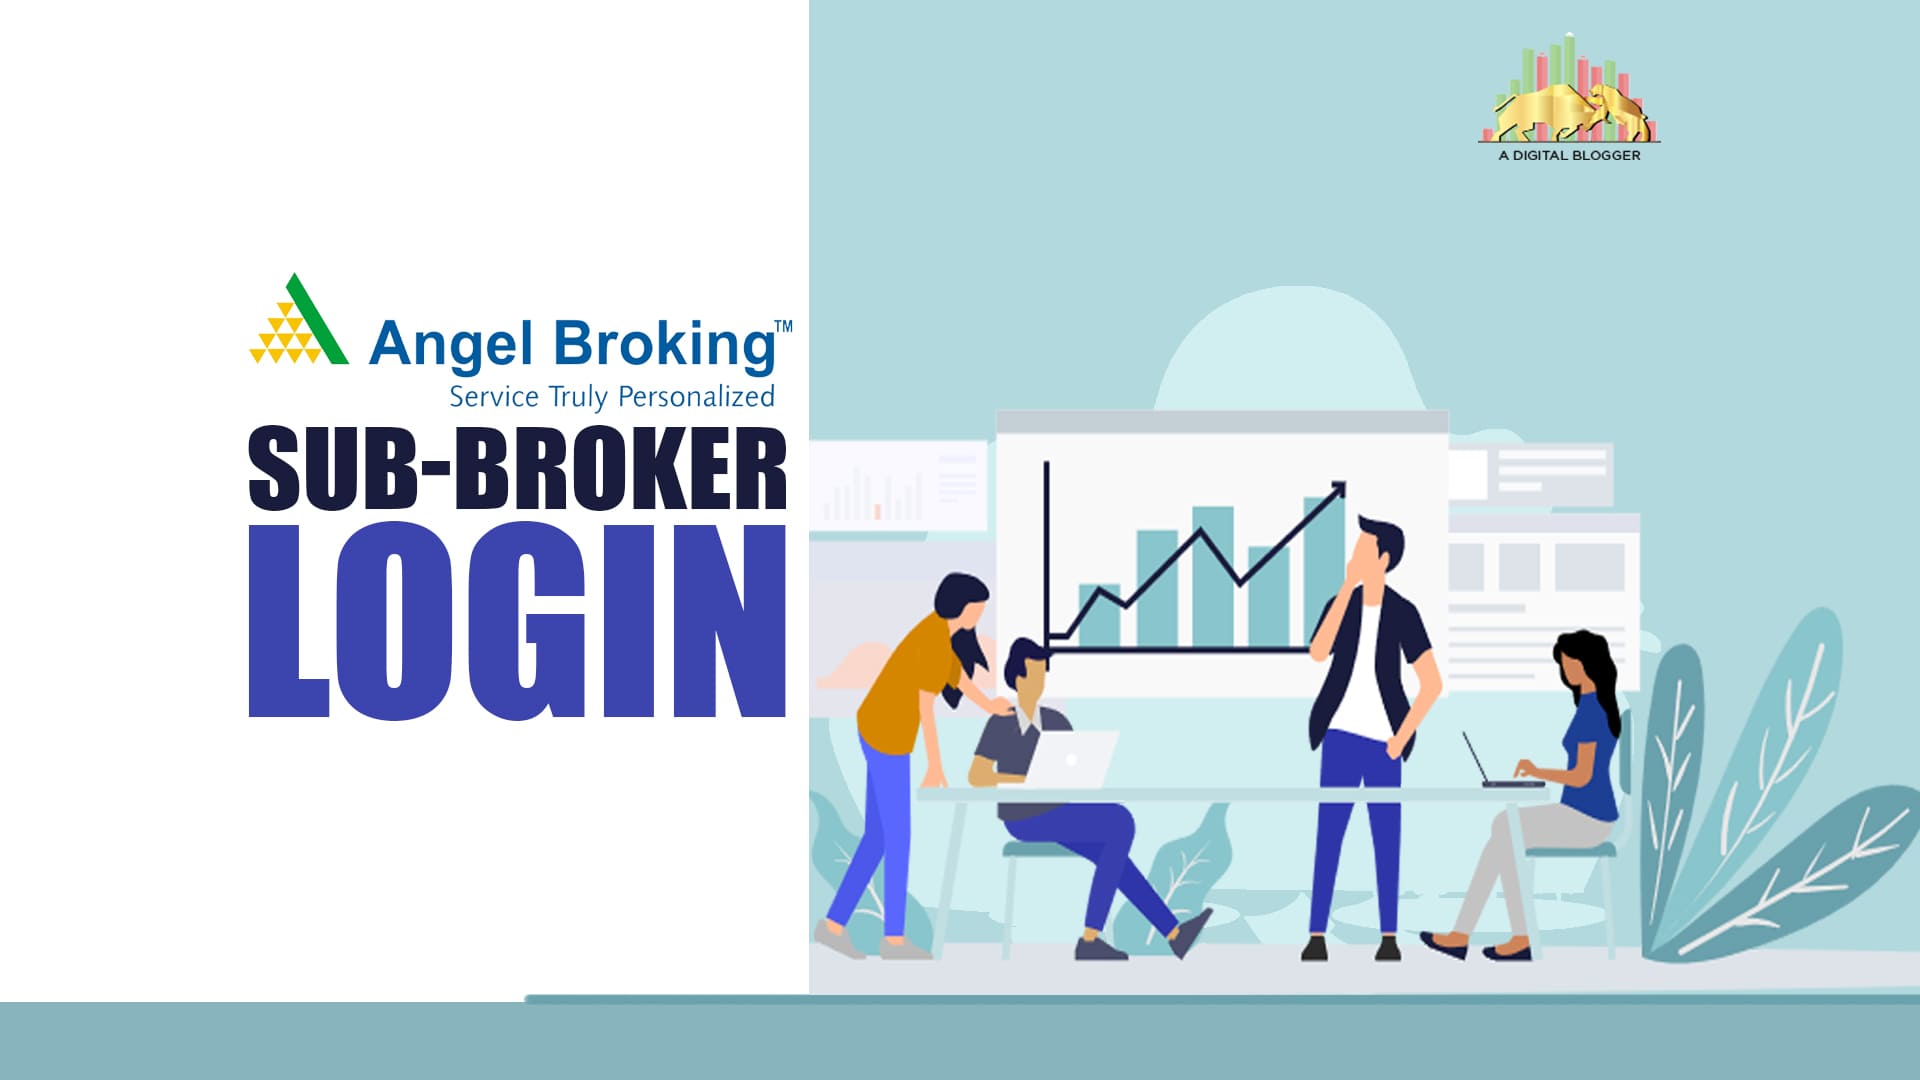 Angel Broking Sub Broker Login | Details, Web, Mobile